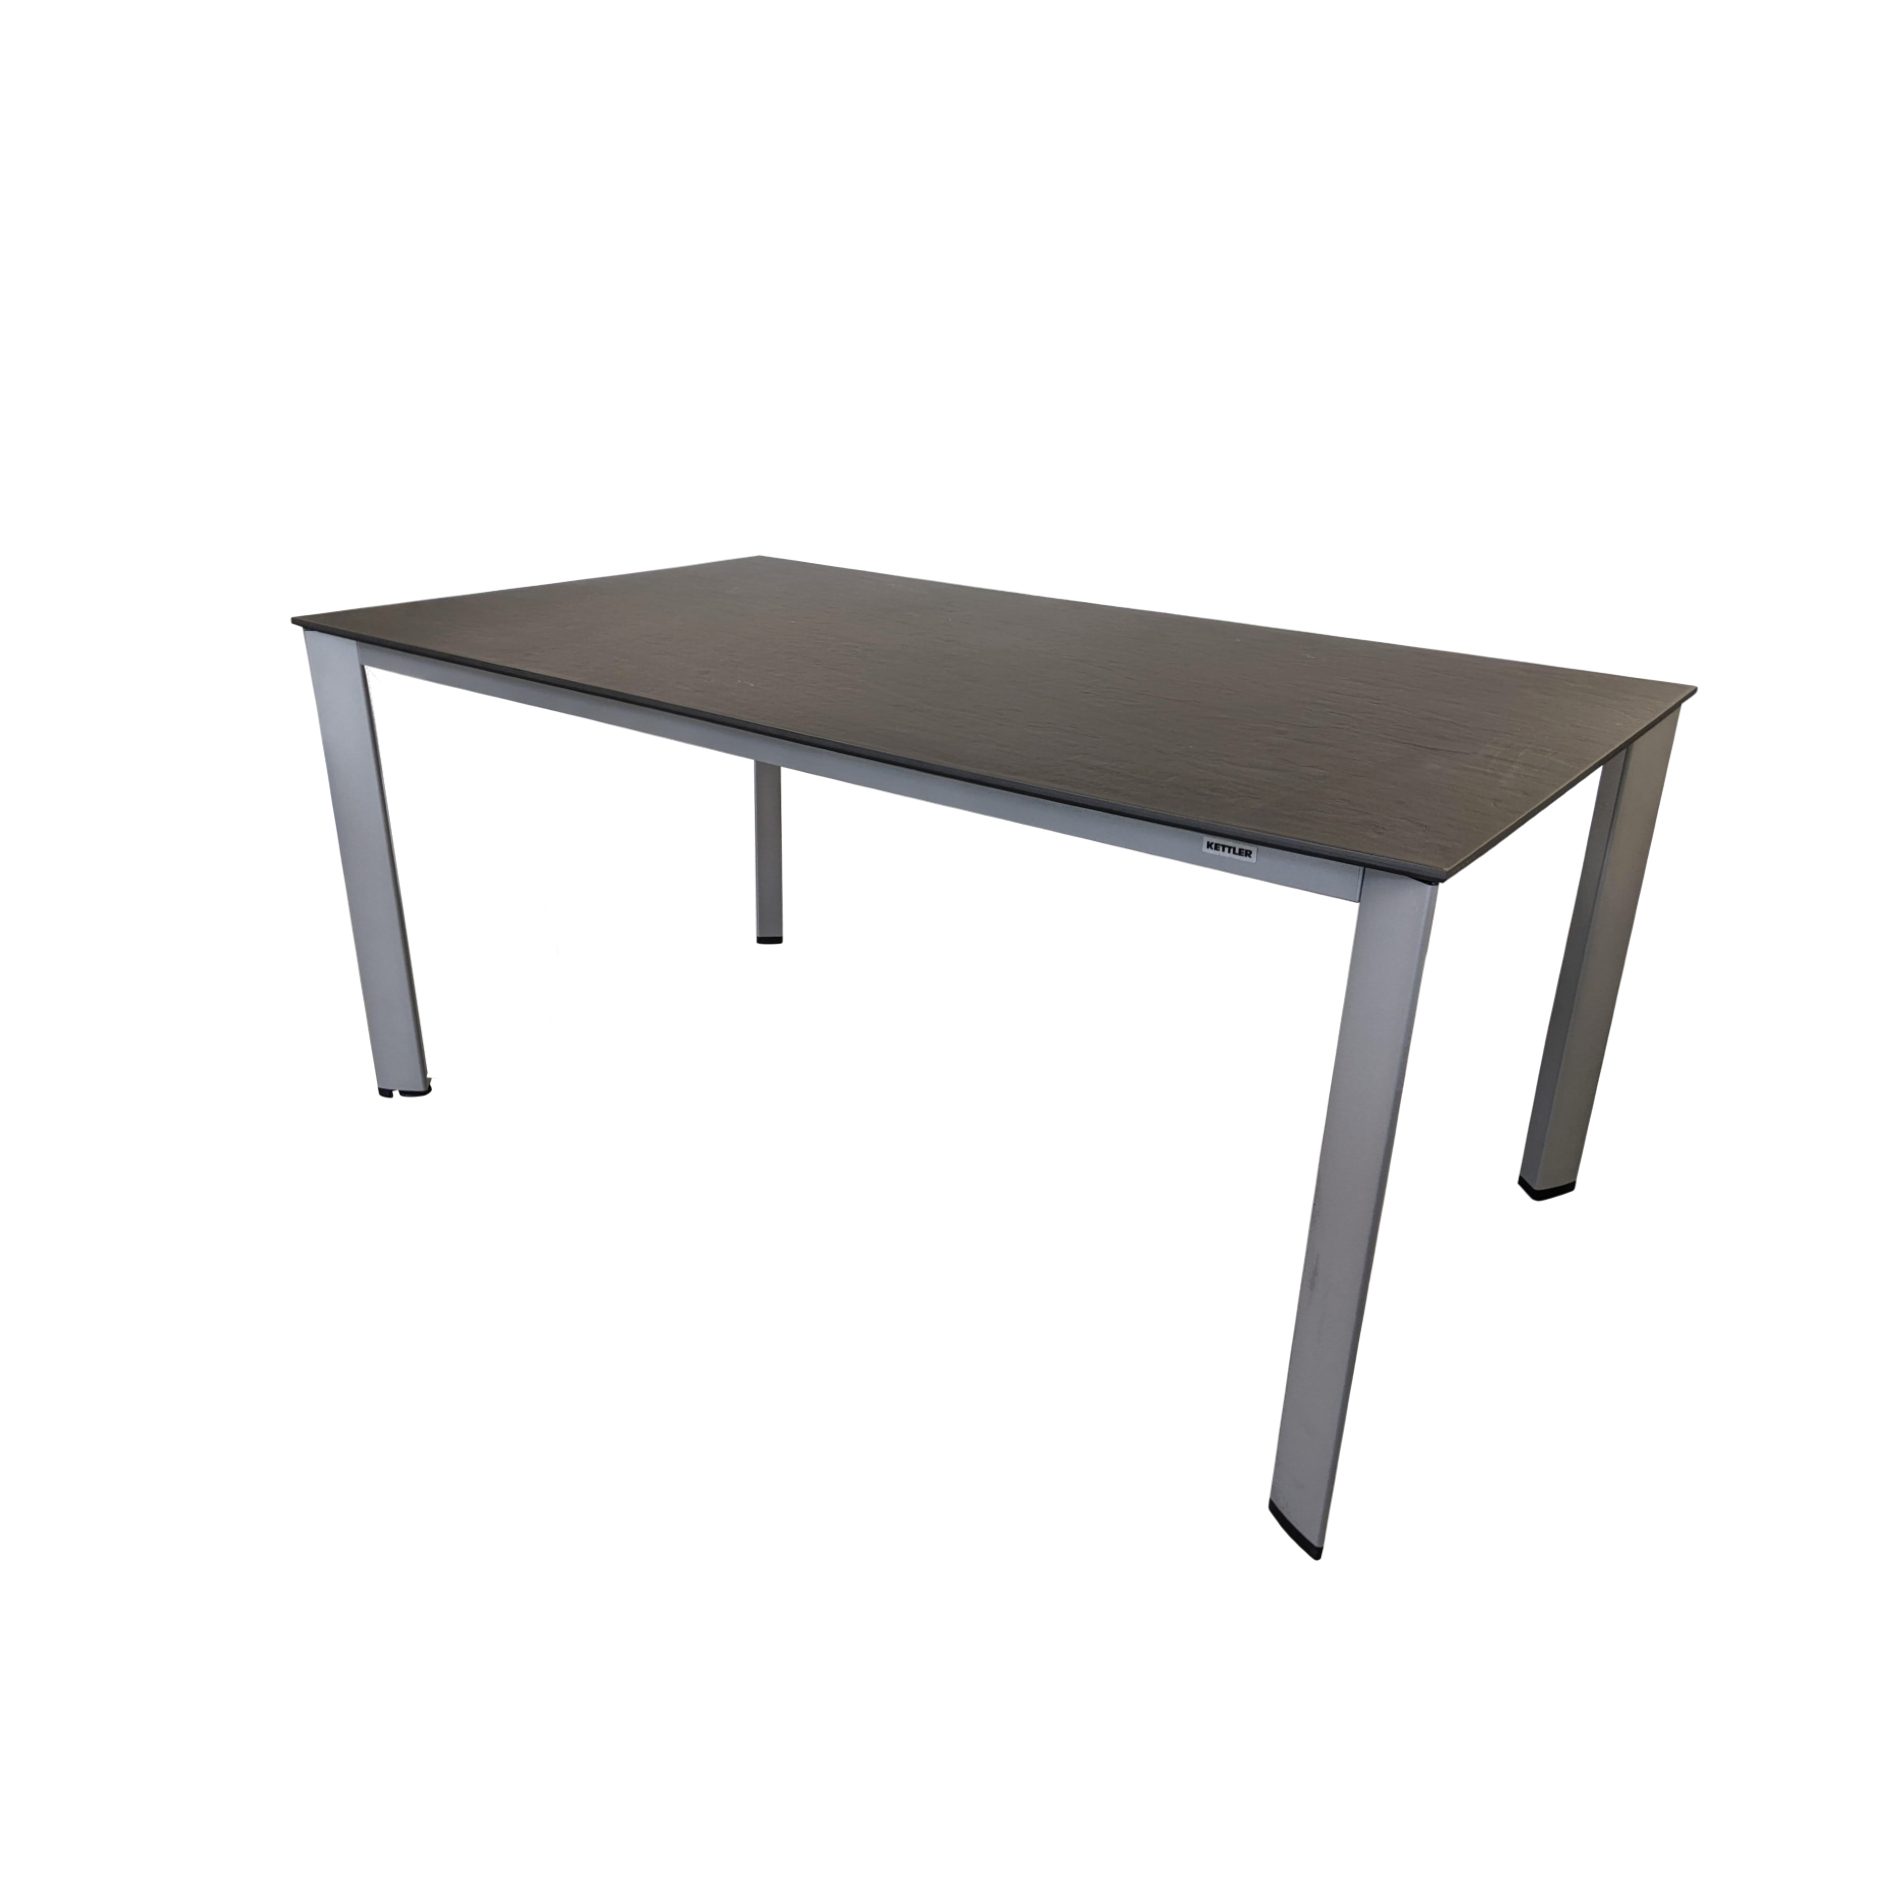 Kettler "Edge" Tischsystem Gartentisch, Gestell Aluminium silber, Tischplatte Kettalux-Plus anthrazit (Schieferoptik), 160x95 cm